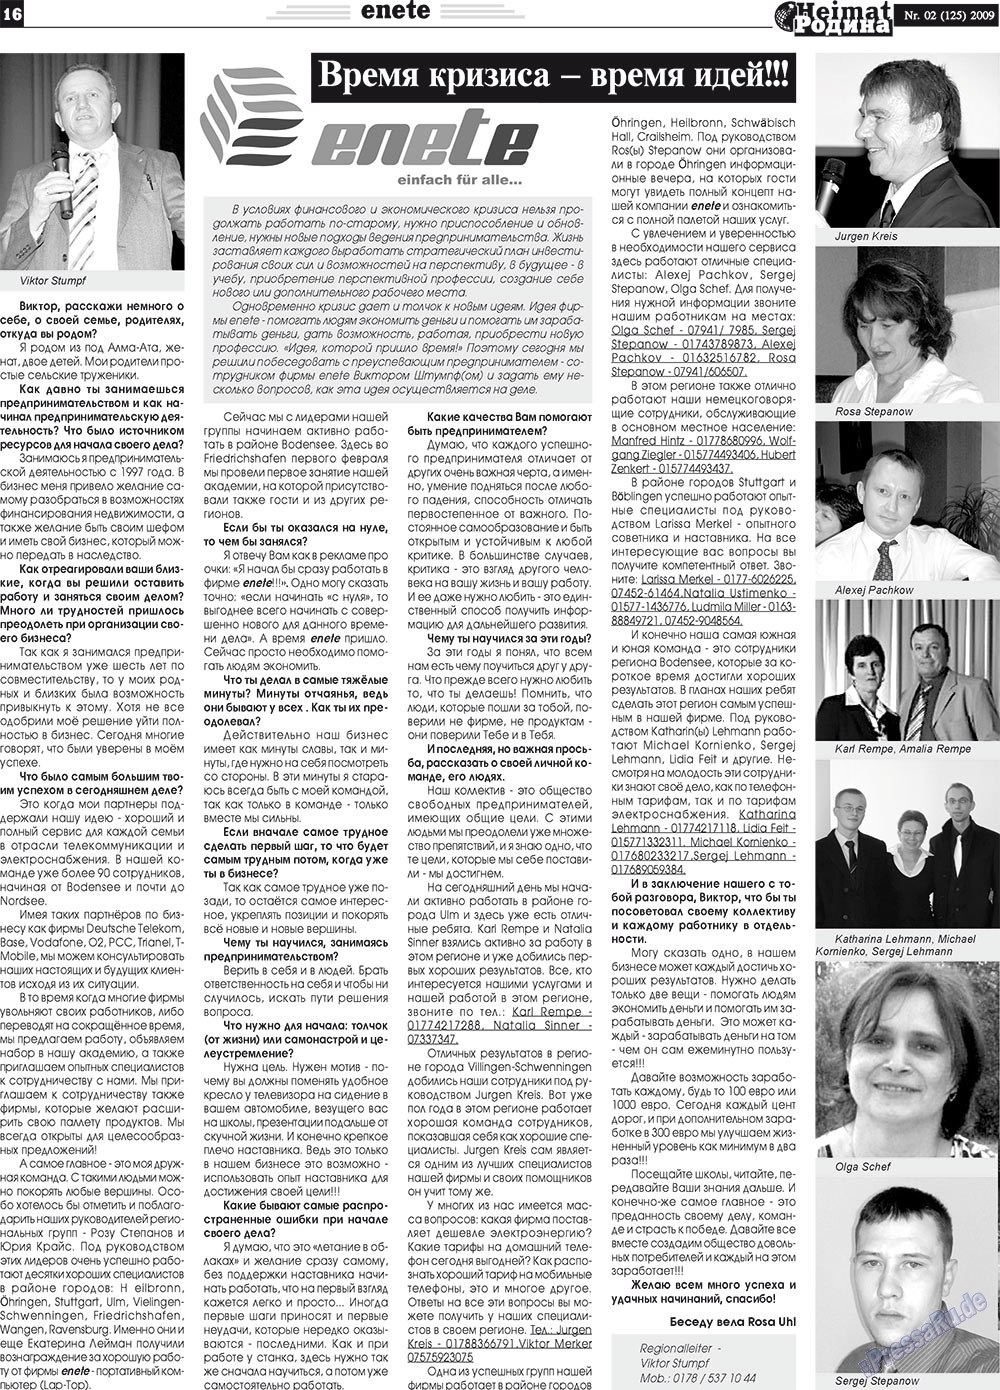 Heimat-Родина (газета). 2009 год, номер 2, стр. 16